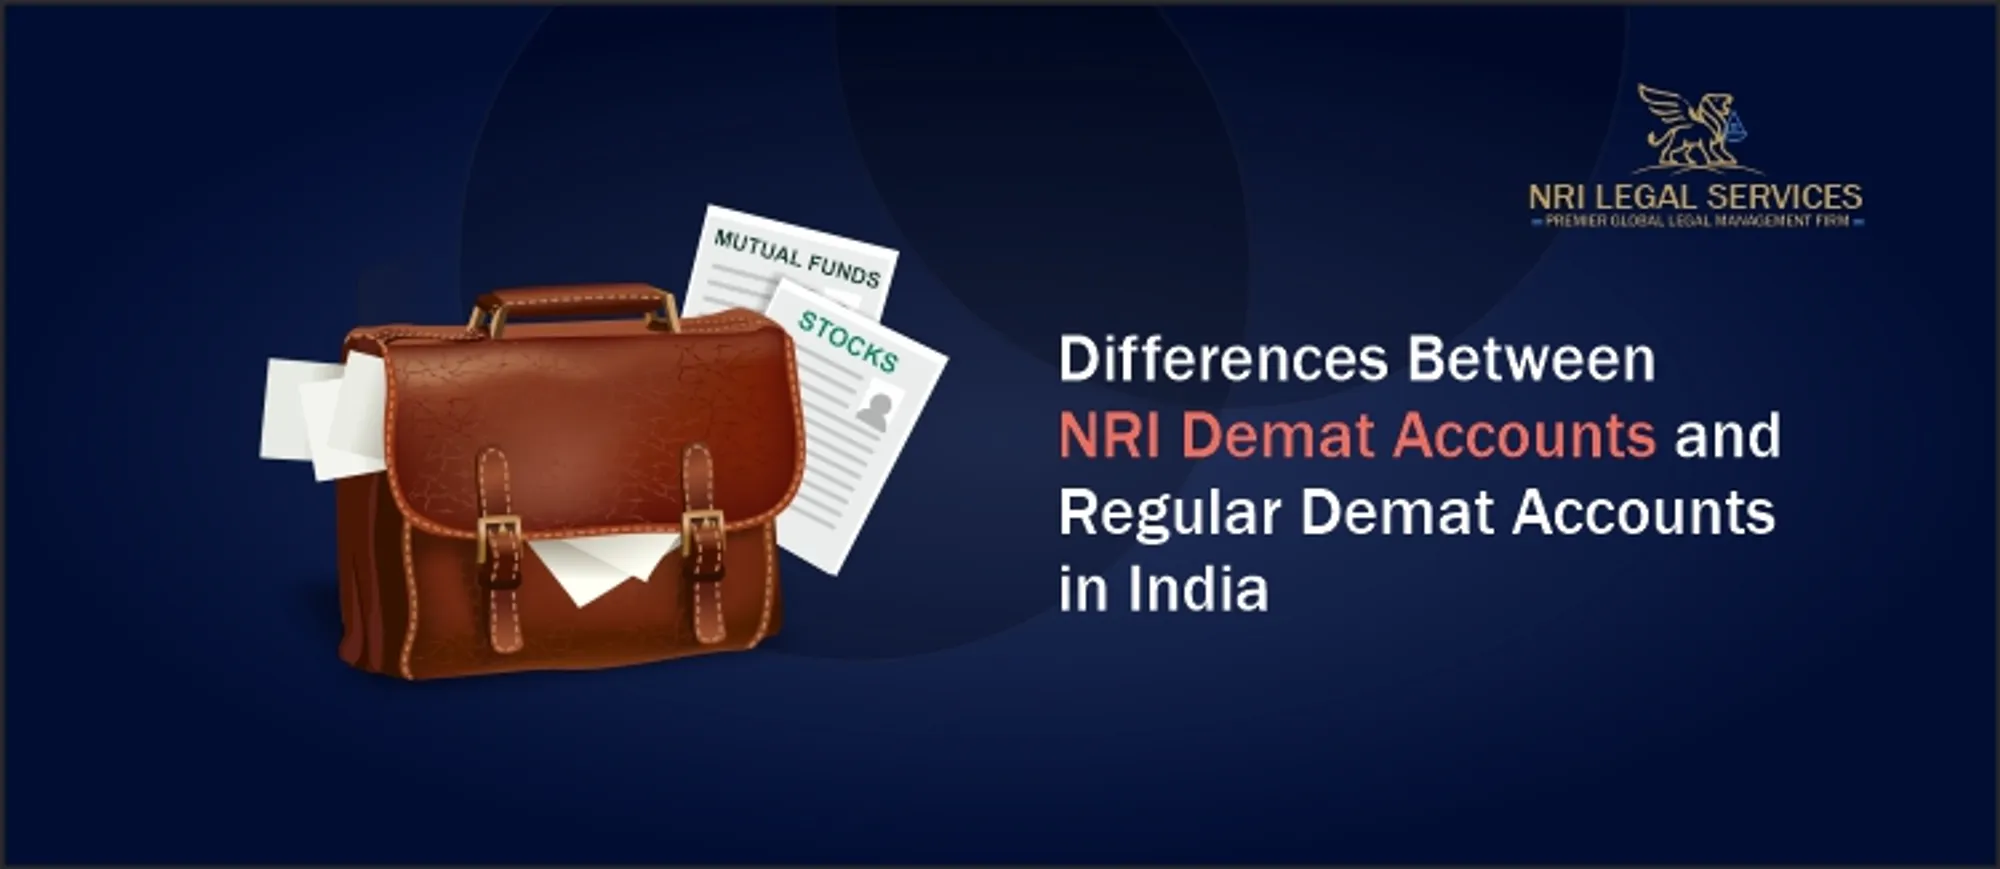 NRI Demat Accounts and Regular Demat Accounts in India